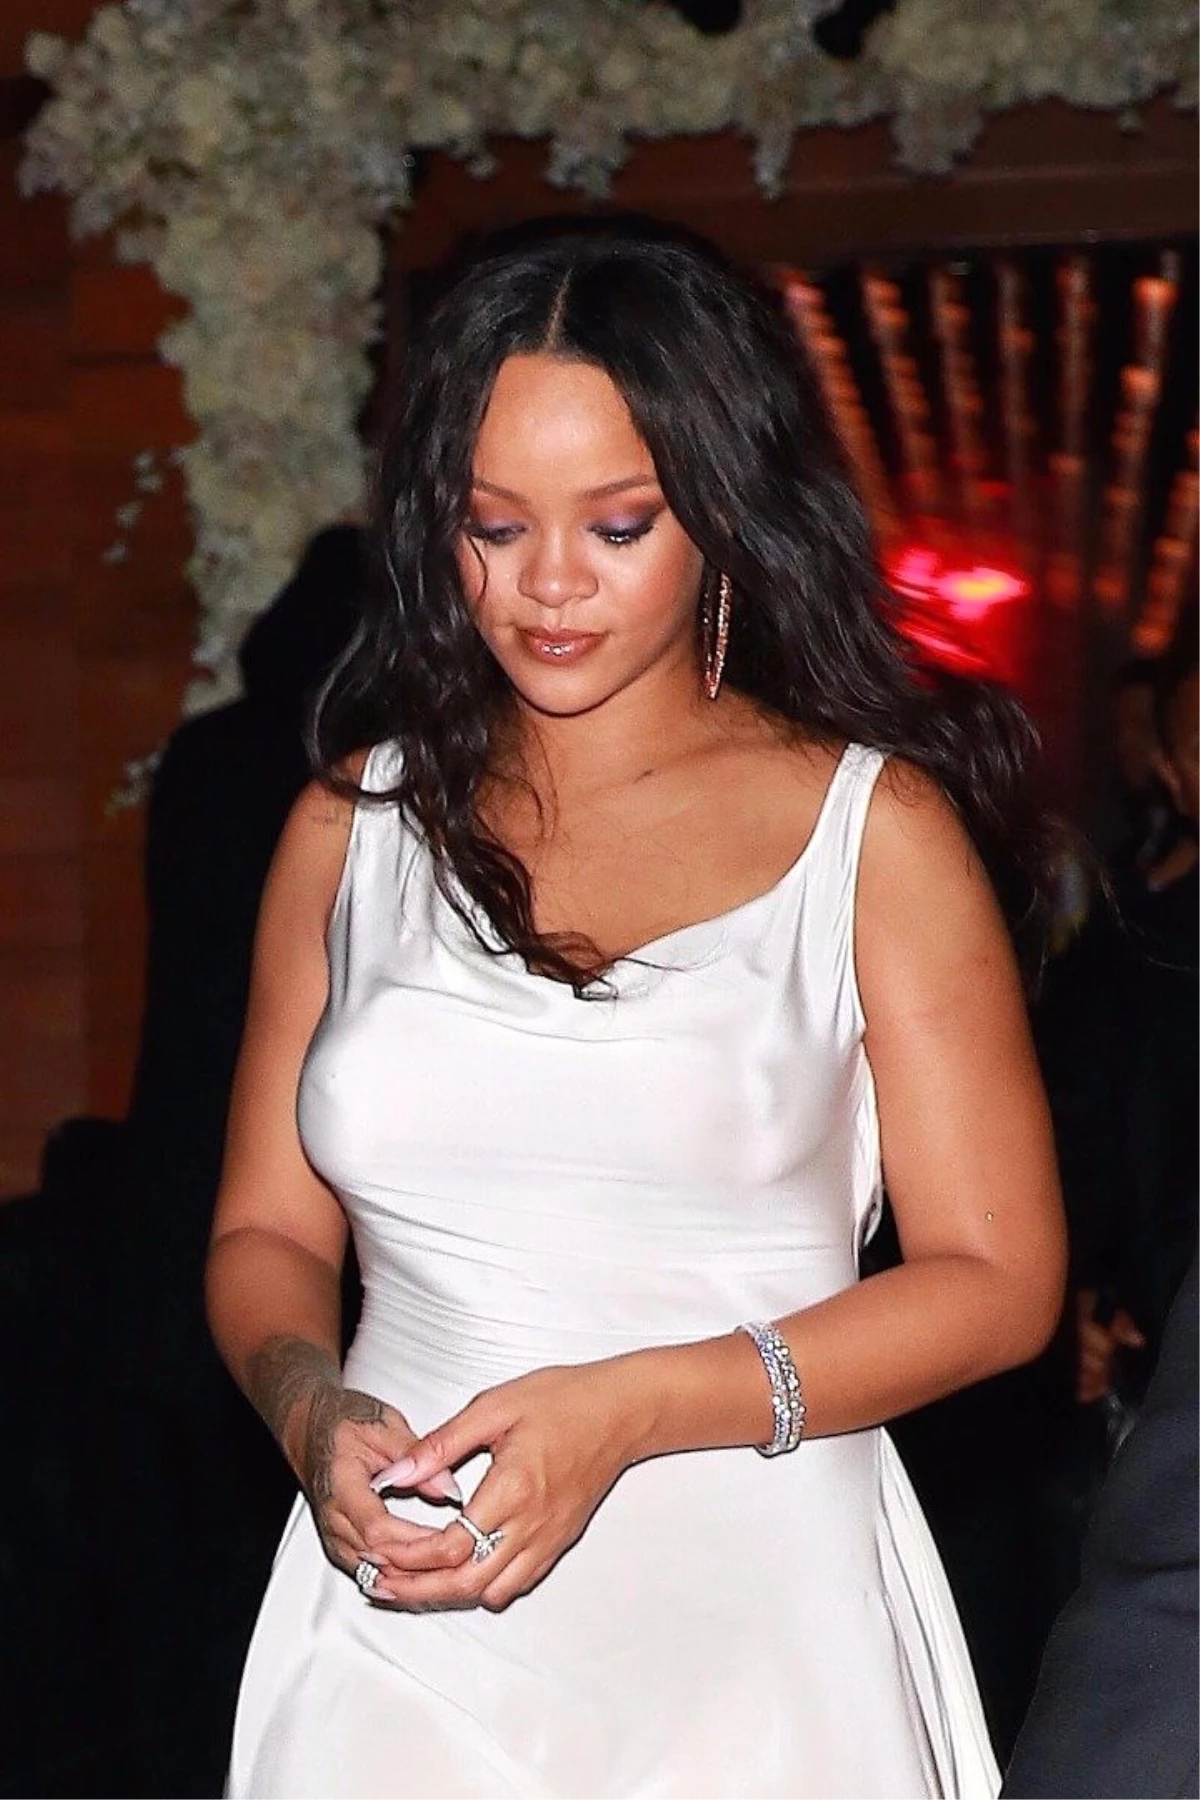 Yine Rihanna Yine Olay! Yardım Gecesinde Sütyenini Çıkarıp Attı